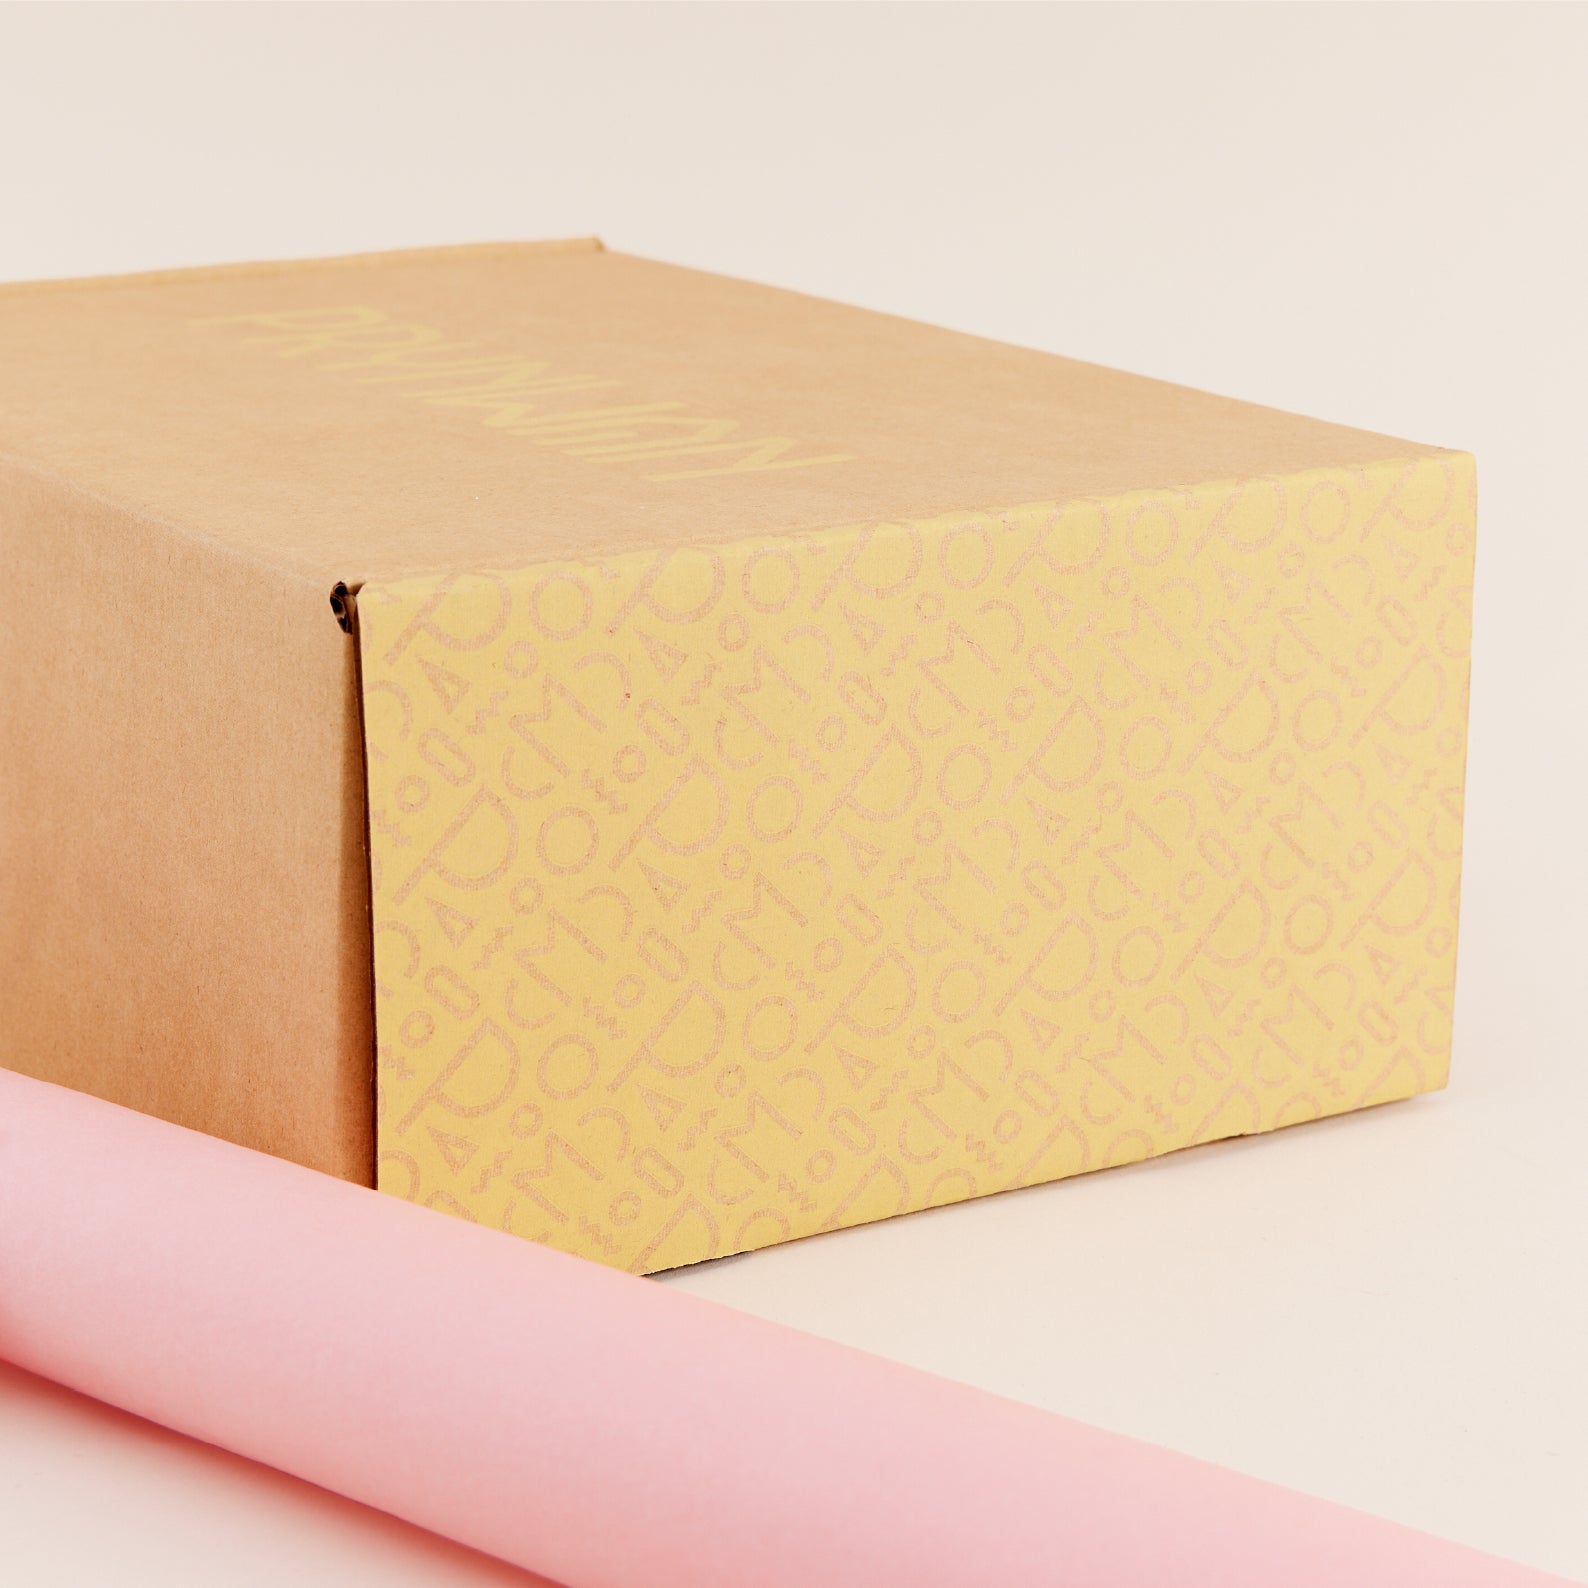 PRYNWAN S Gift Box Set | ชุดกล่องของขวัญ